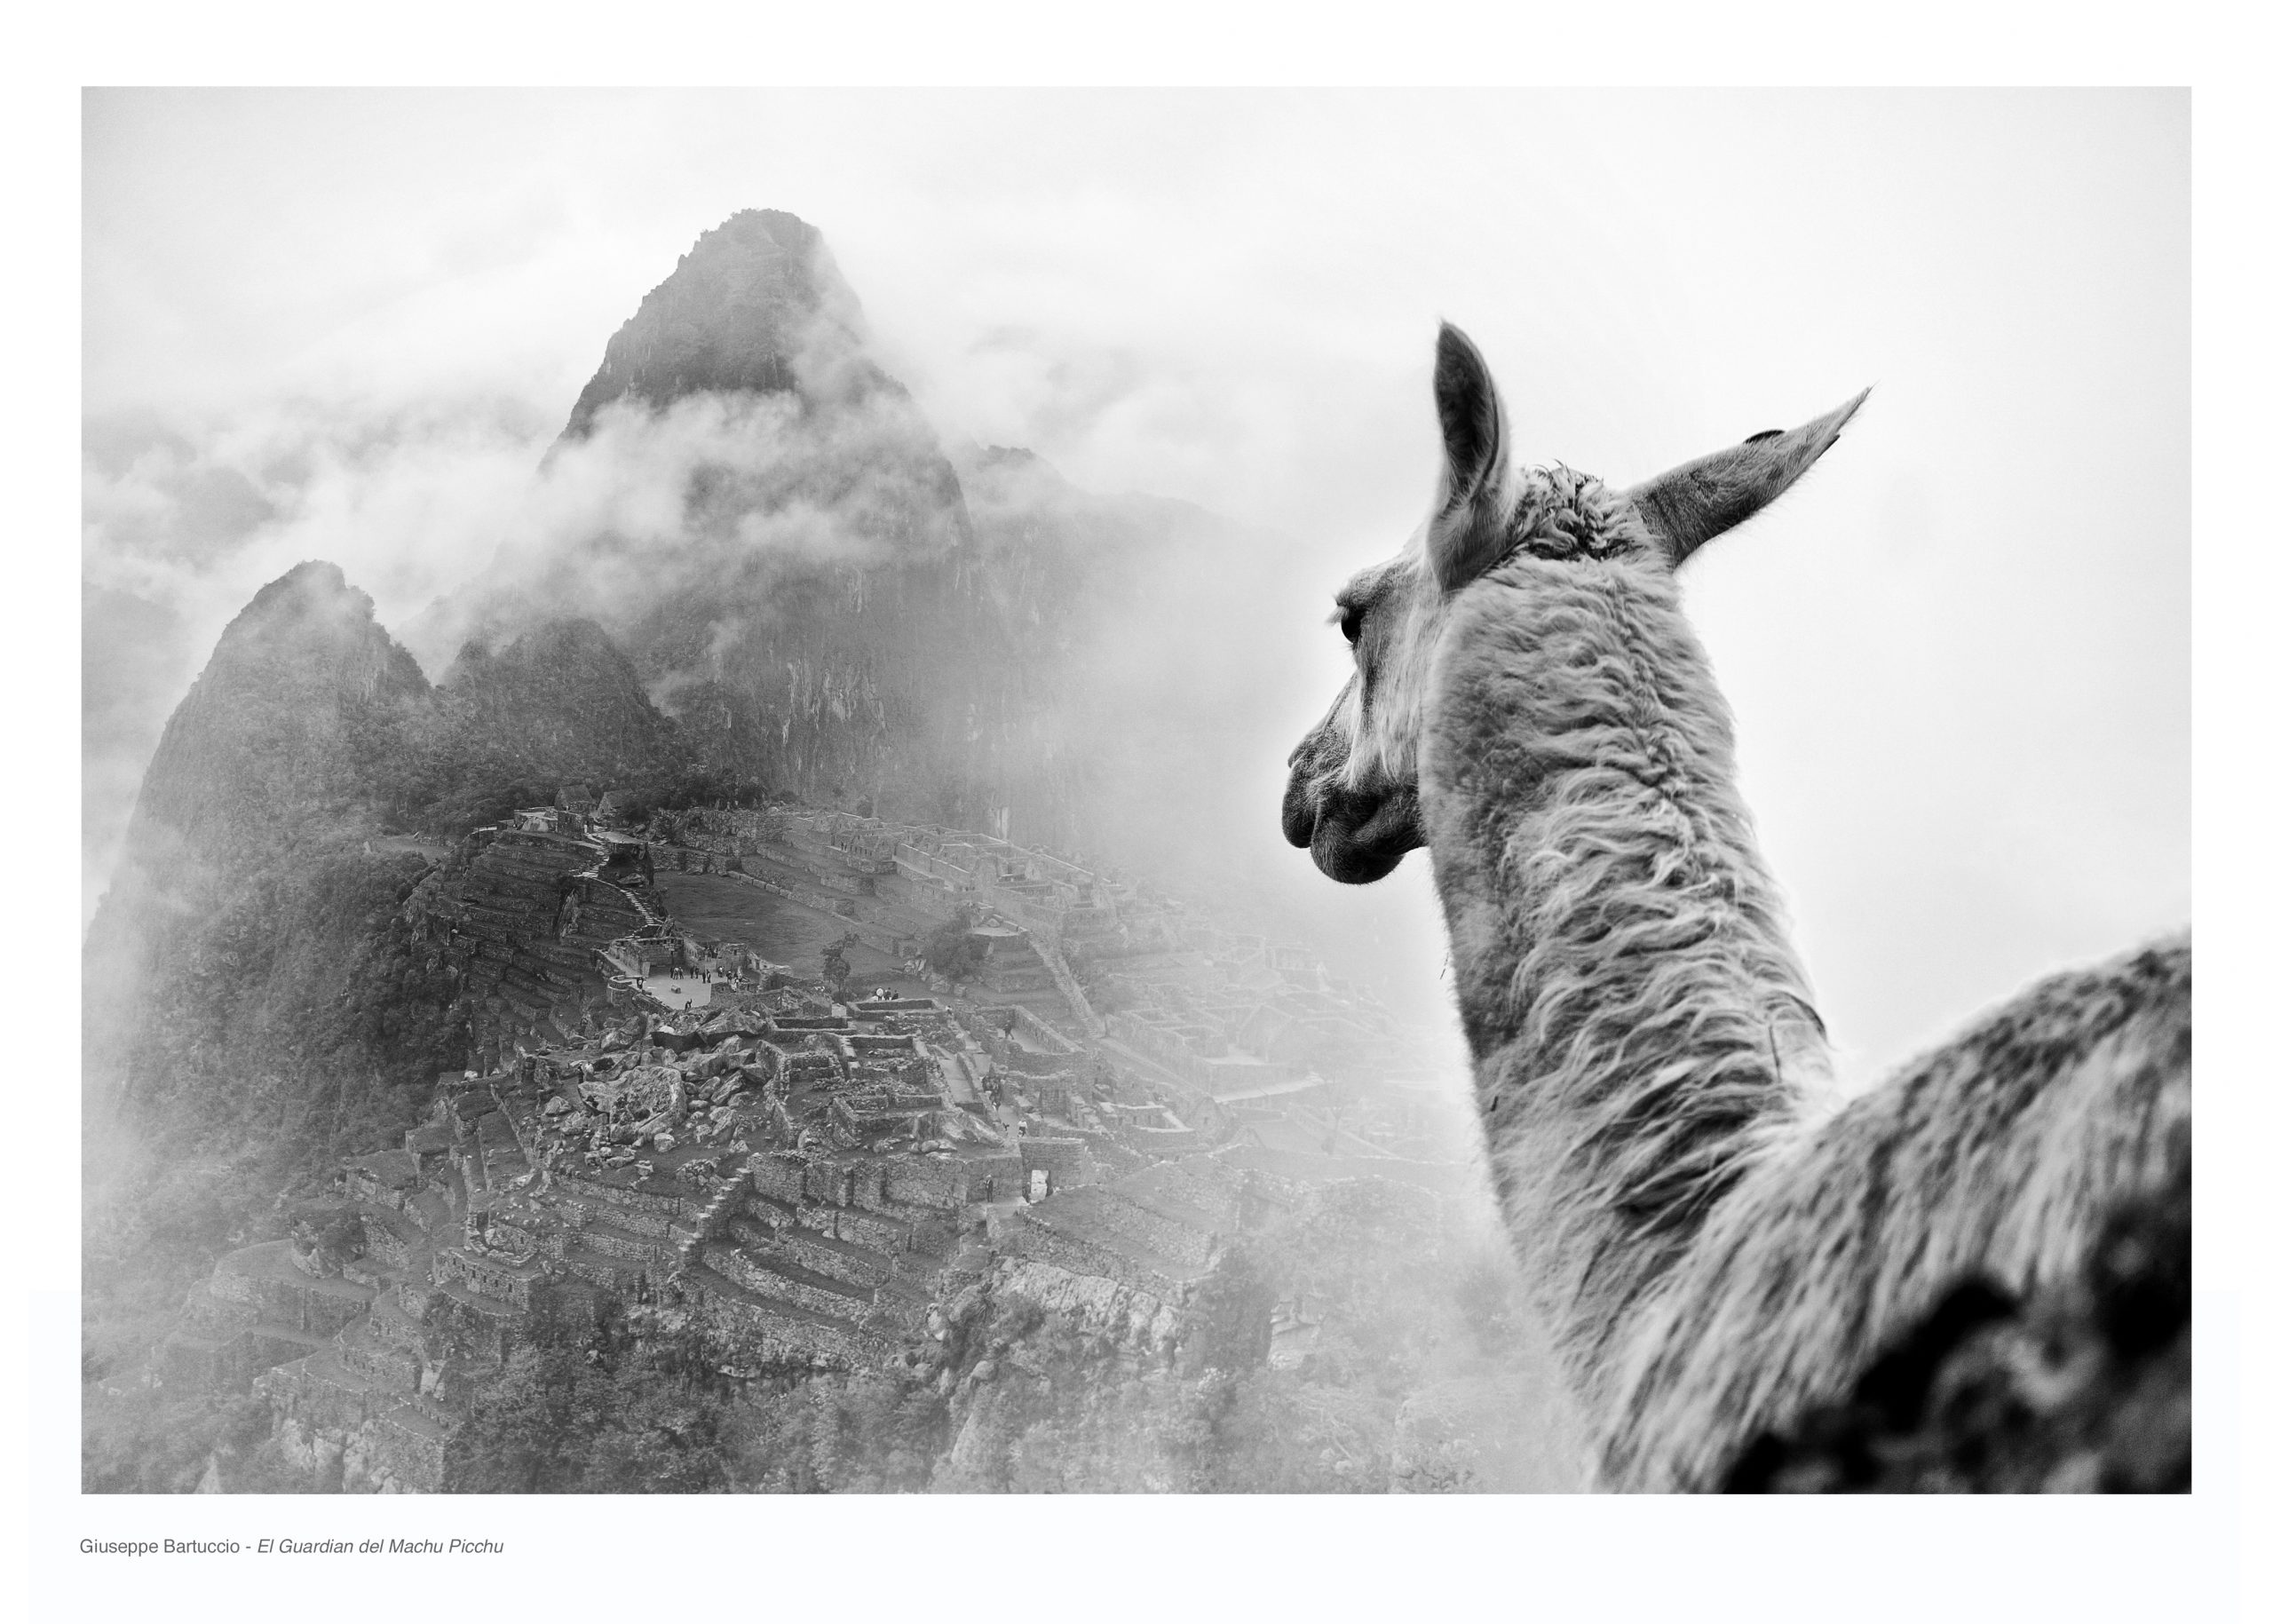 Giuseppe Bartuccio - El Guardian del Machu Picchu